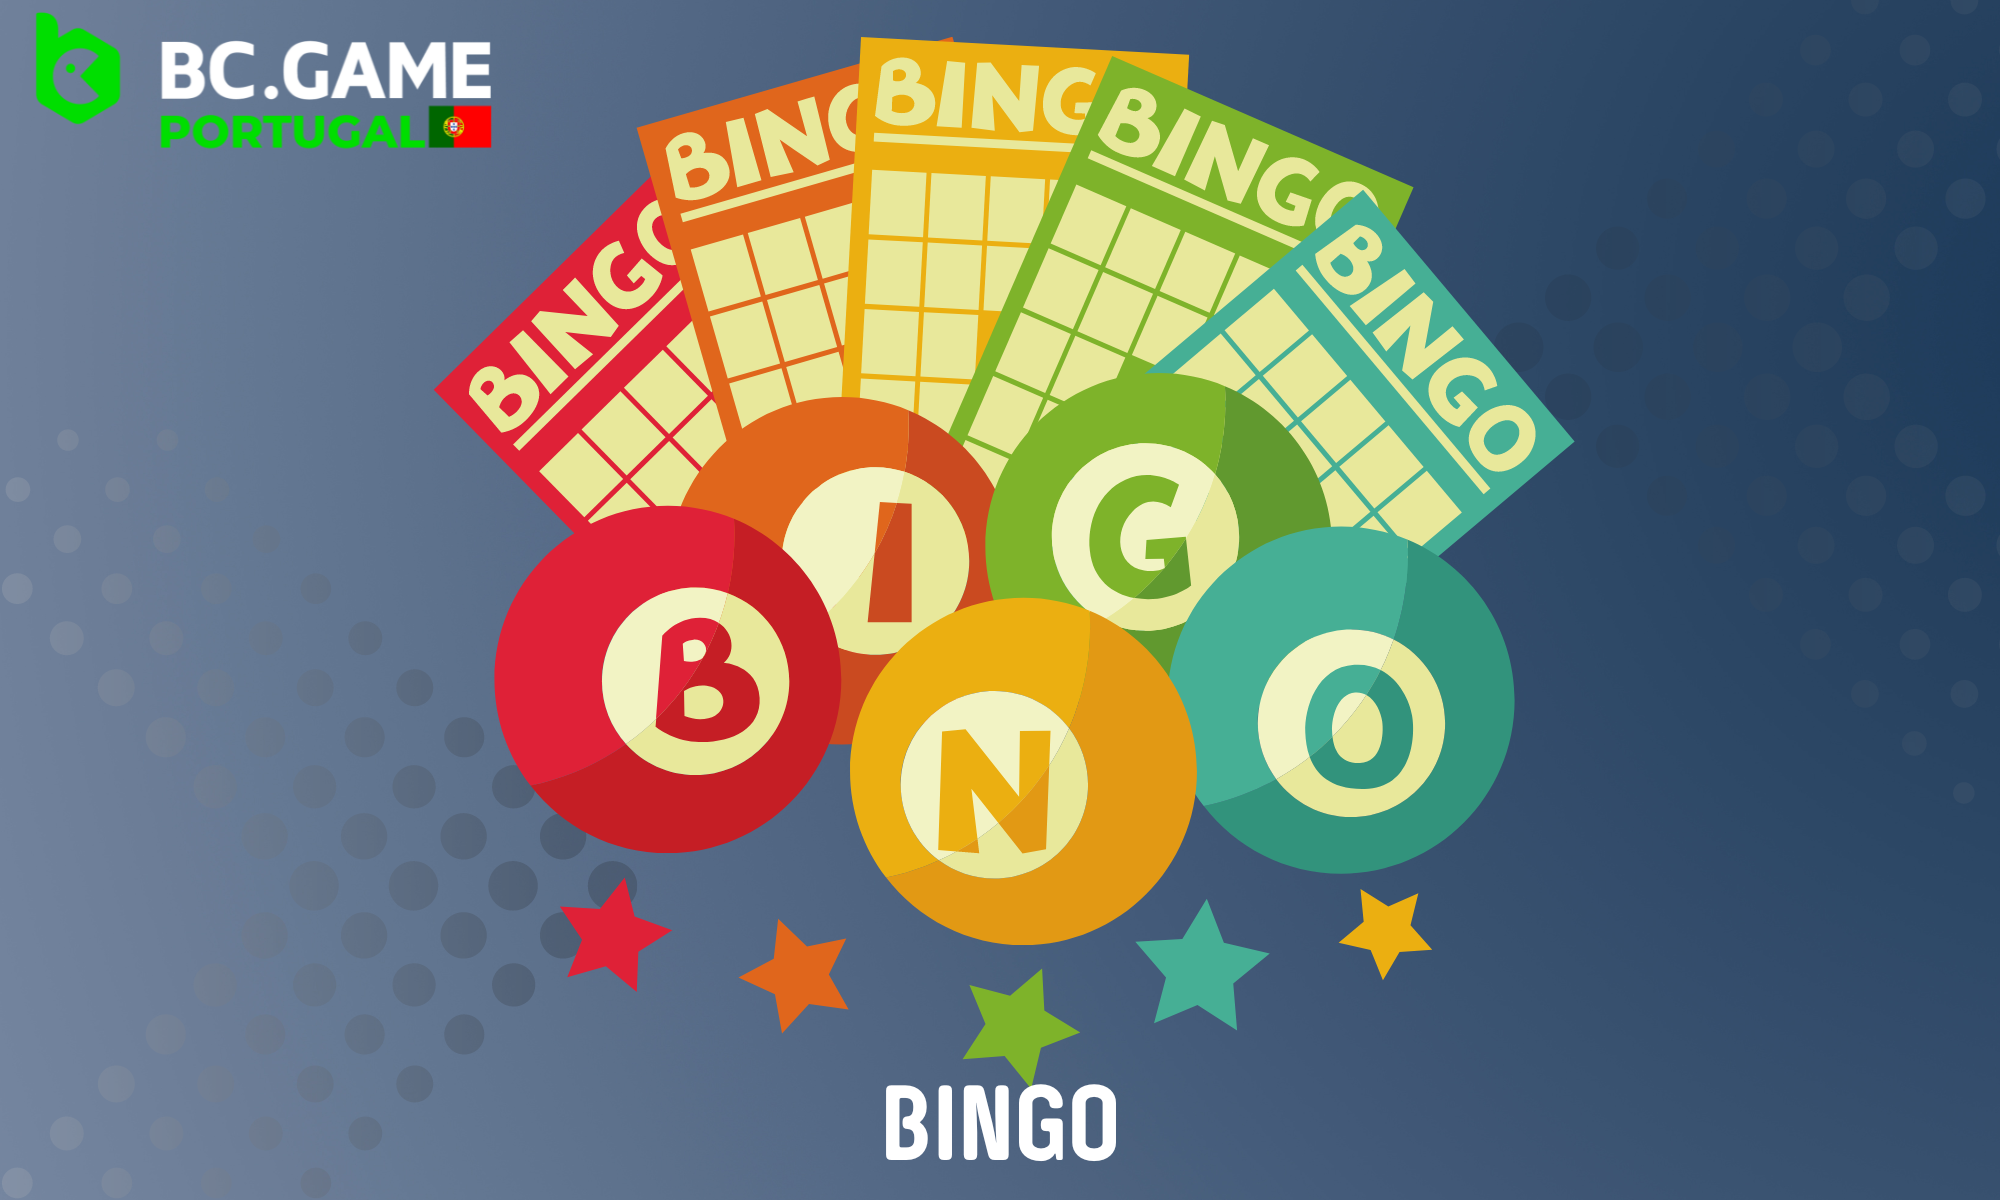 Lista dos jogos de bingo mais populares disponíveis na BC Game